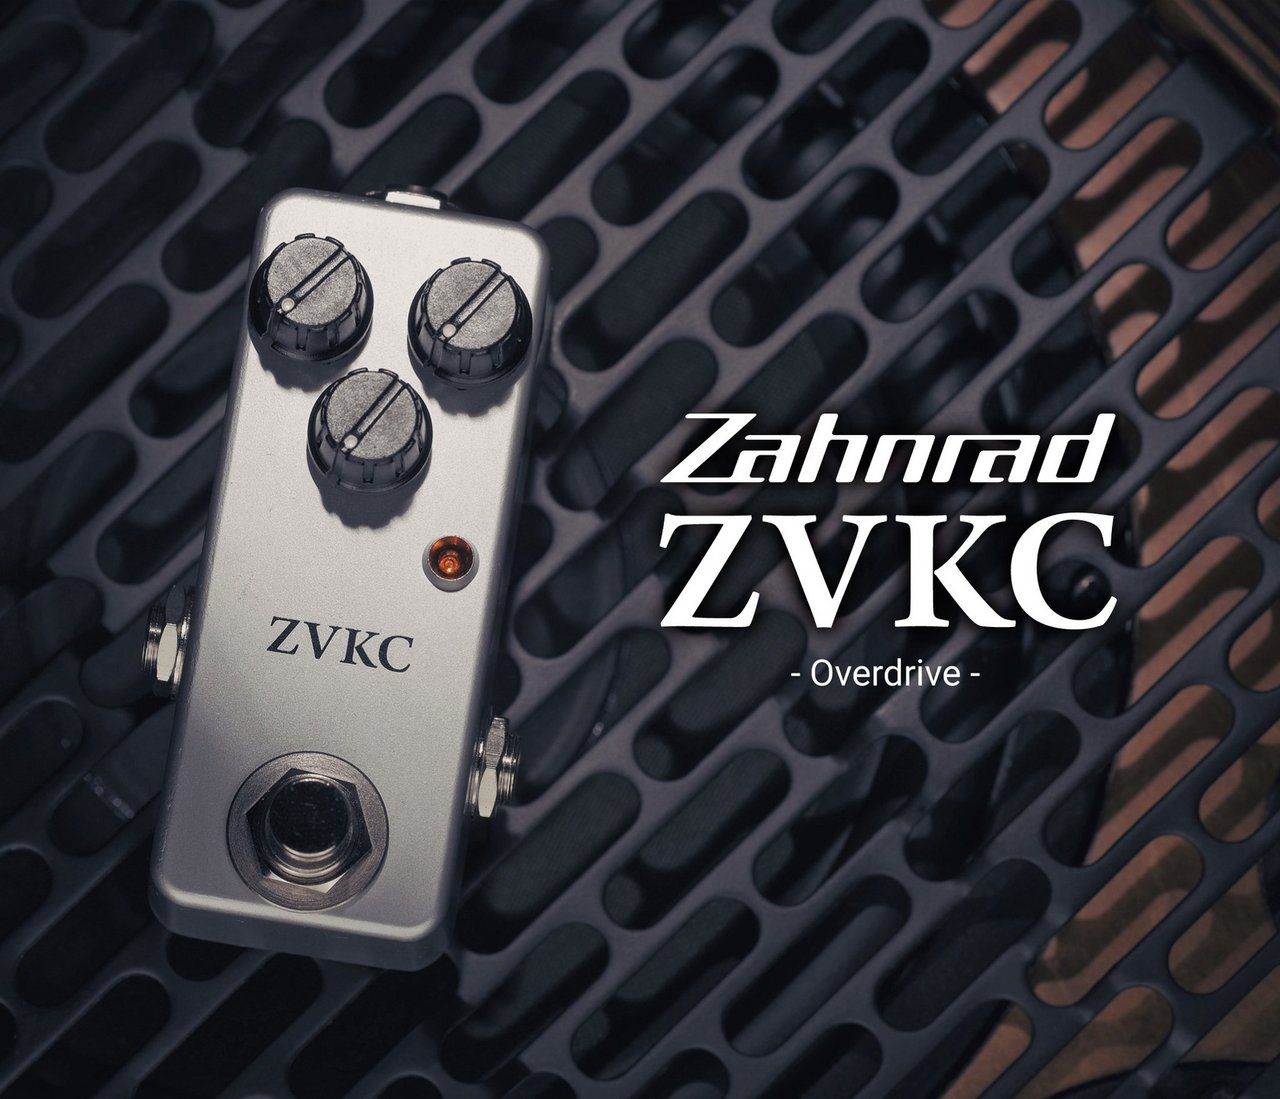 【新入荷情報】Zahnradより究極のケンタウルスクローン「ZVKC」が入荷！